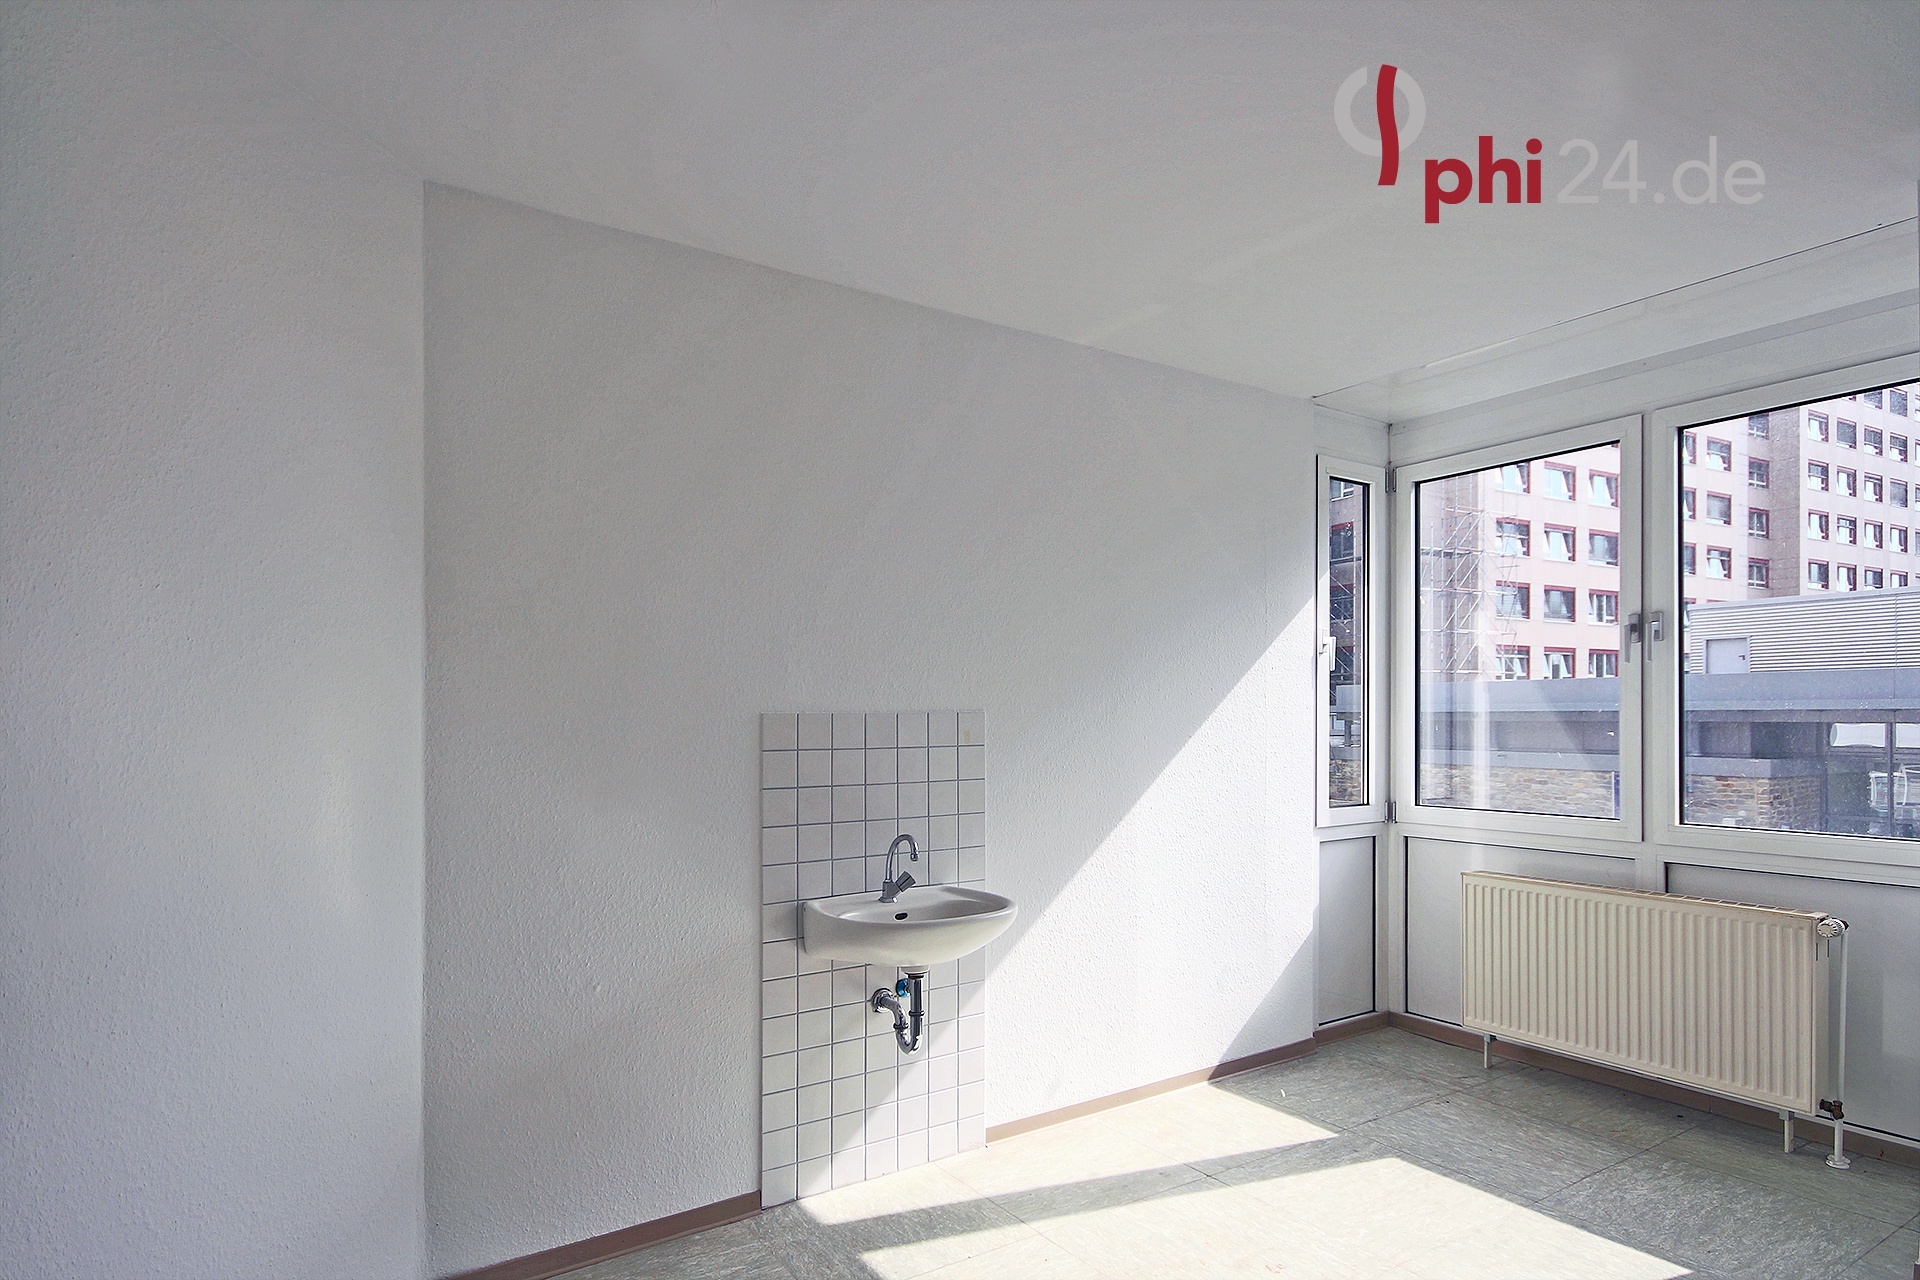 Immobilienmakler Eschweiler Bürogebäude referenzen mit Immobilienbewertung